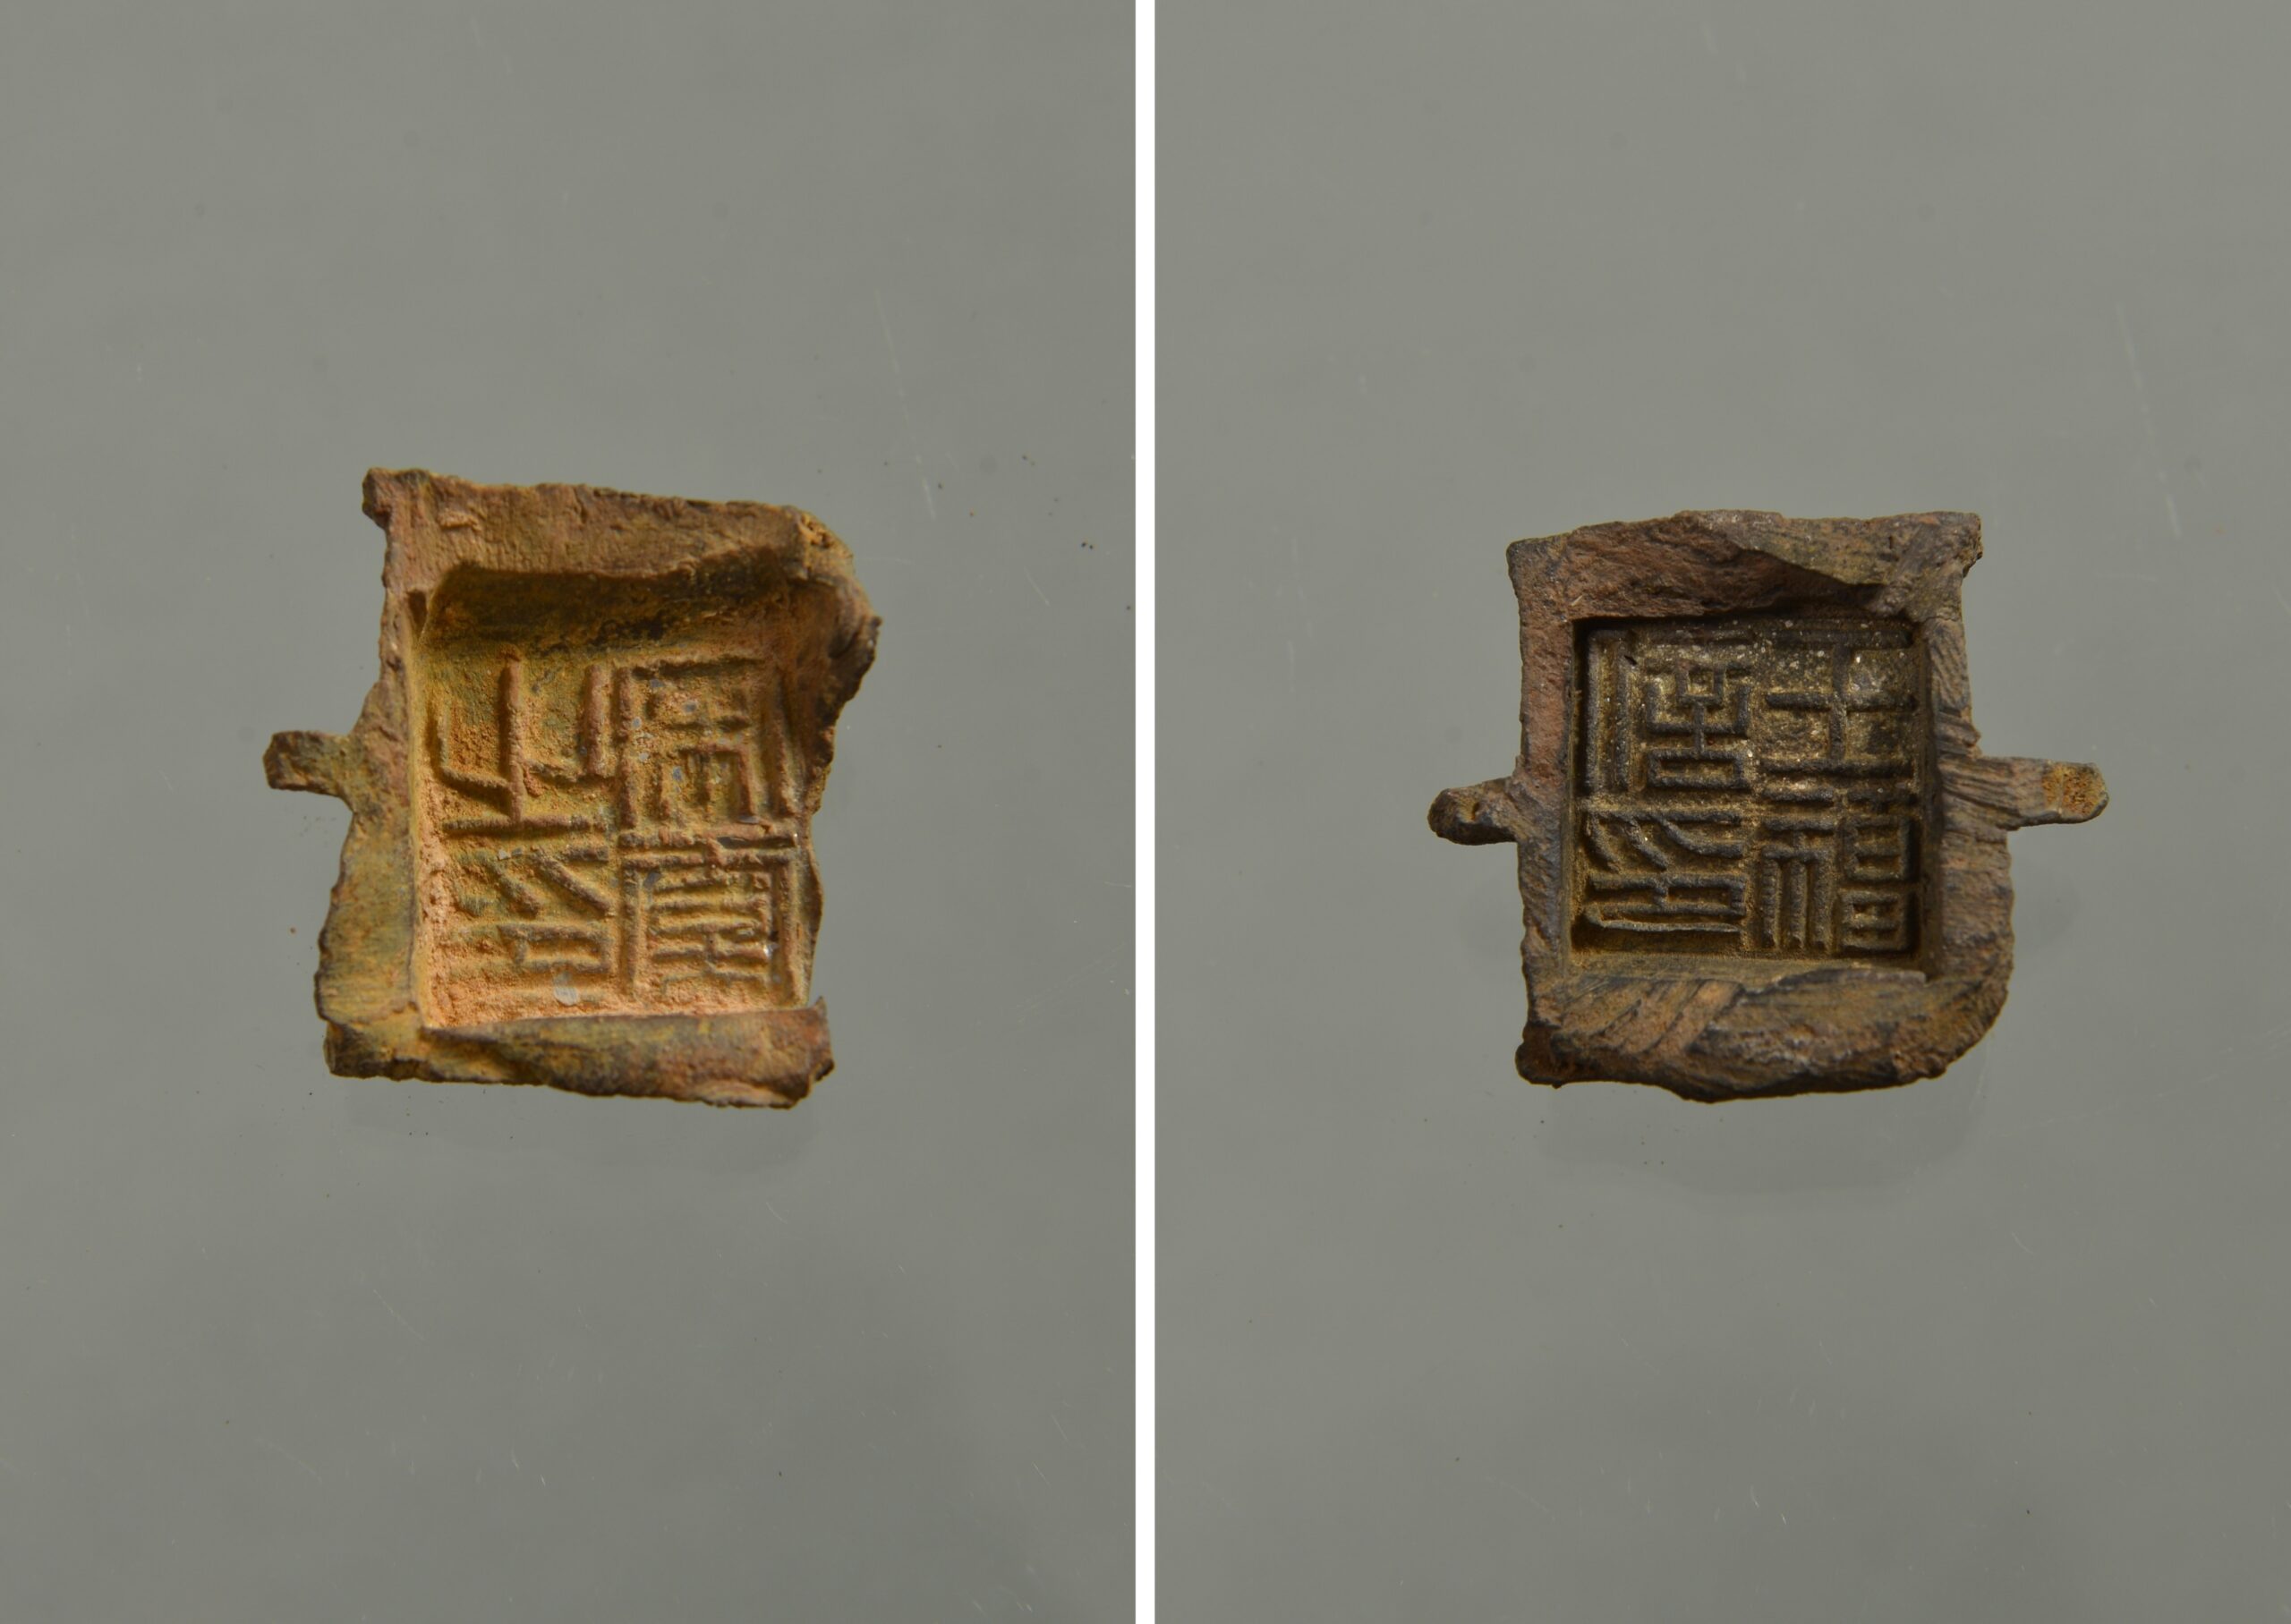 นักโบราณคดีจีนใกล้ไขปริศนาผังอำนาจปกครอง 'แคว้นอี้โจว' ยุคจีนโบราณ